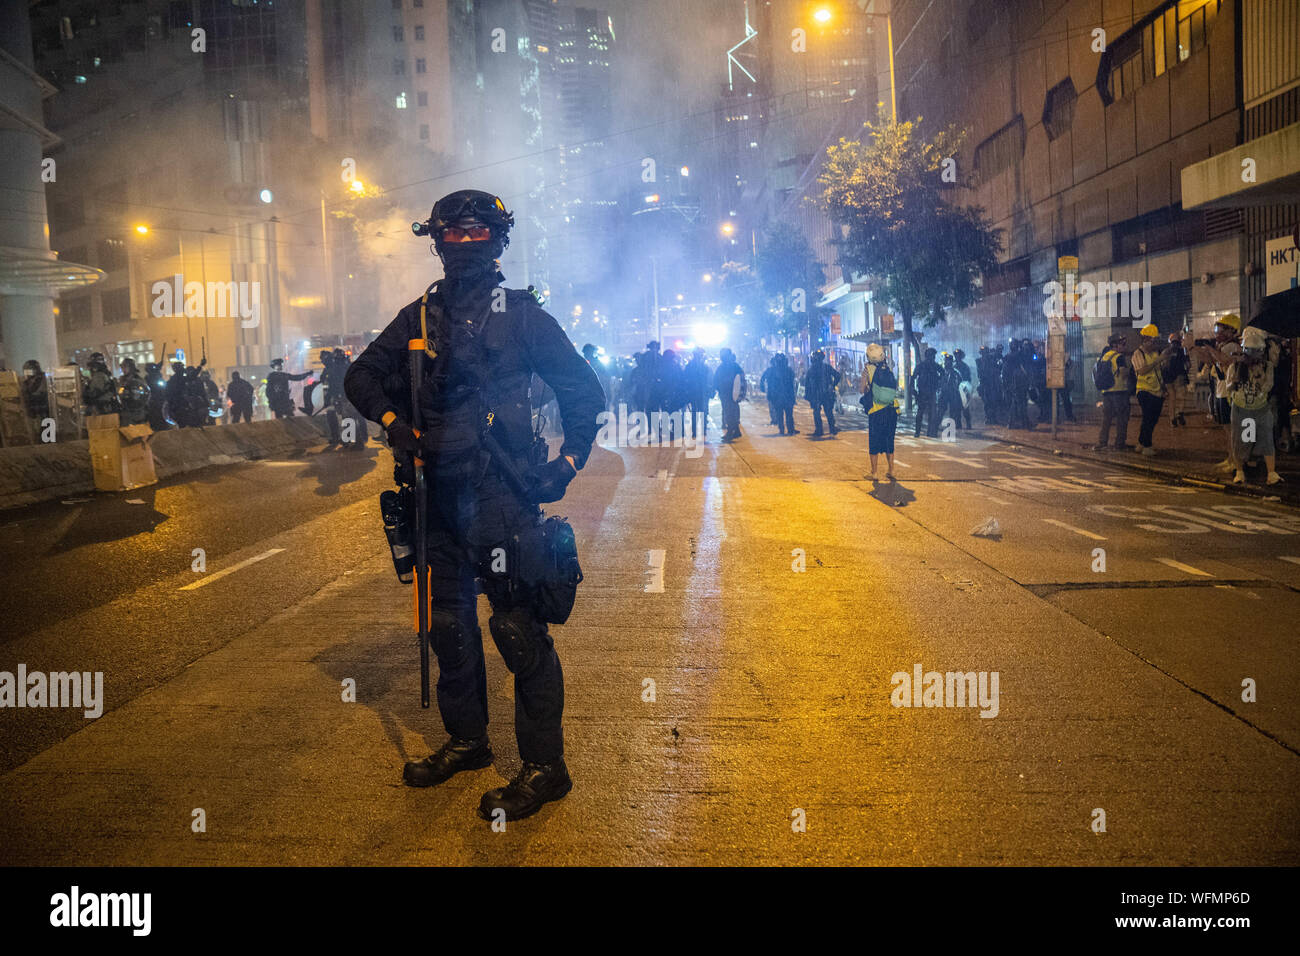 Ein Aufstand Polizist sein Gewehr vor die Demonstranten. Unruhen in Hongkong auch weiterhin als Tausende Demonstranten an einer illegalen Demonstration gegen die Regierung. Benzinbomben wurde von den Demonstranten geworfen worden und feuerte die Polizei mehrere Runden von Gummigeschossen gegen die Demonstranten. Stockfoto